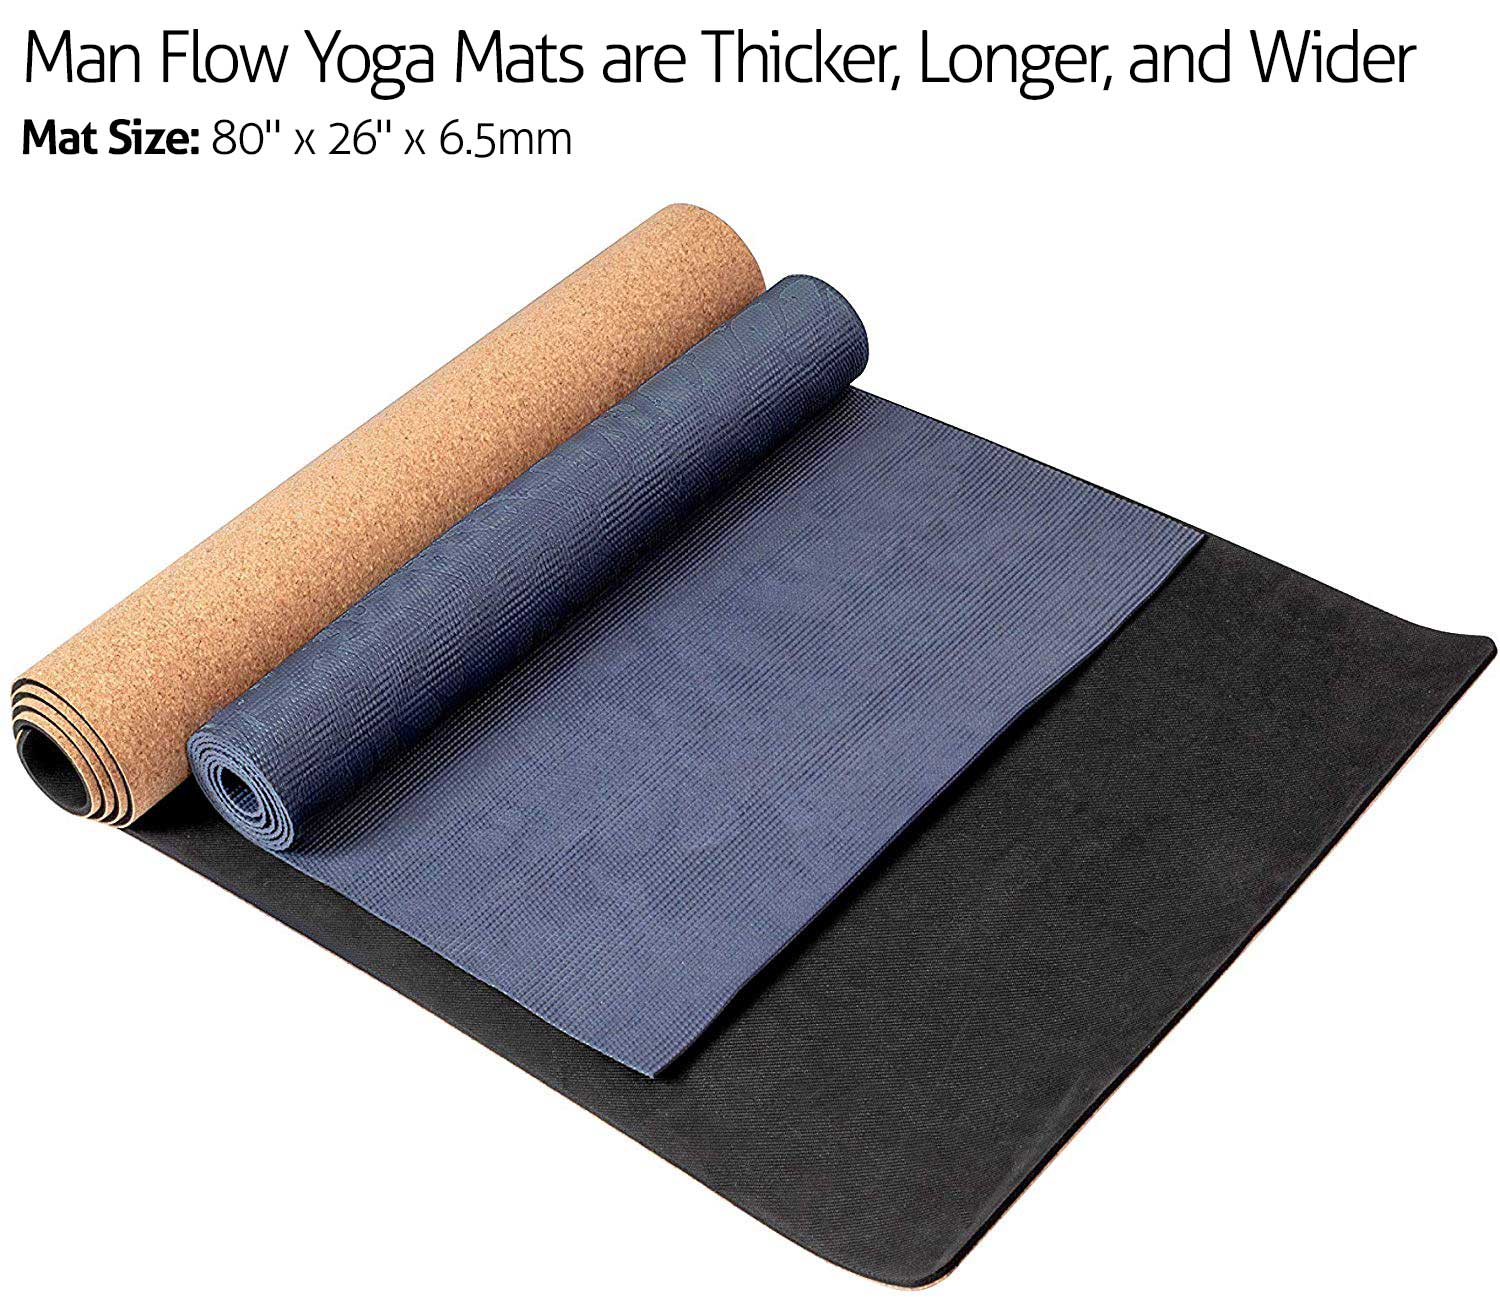 Rubber yoga mat